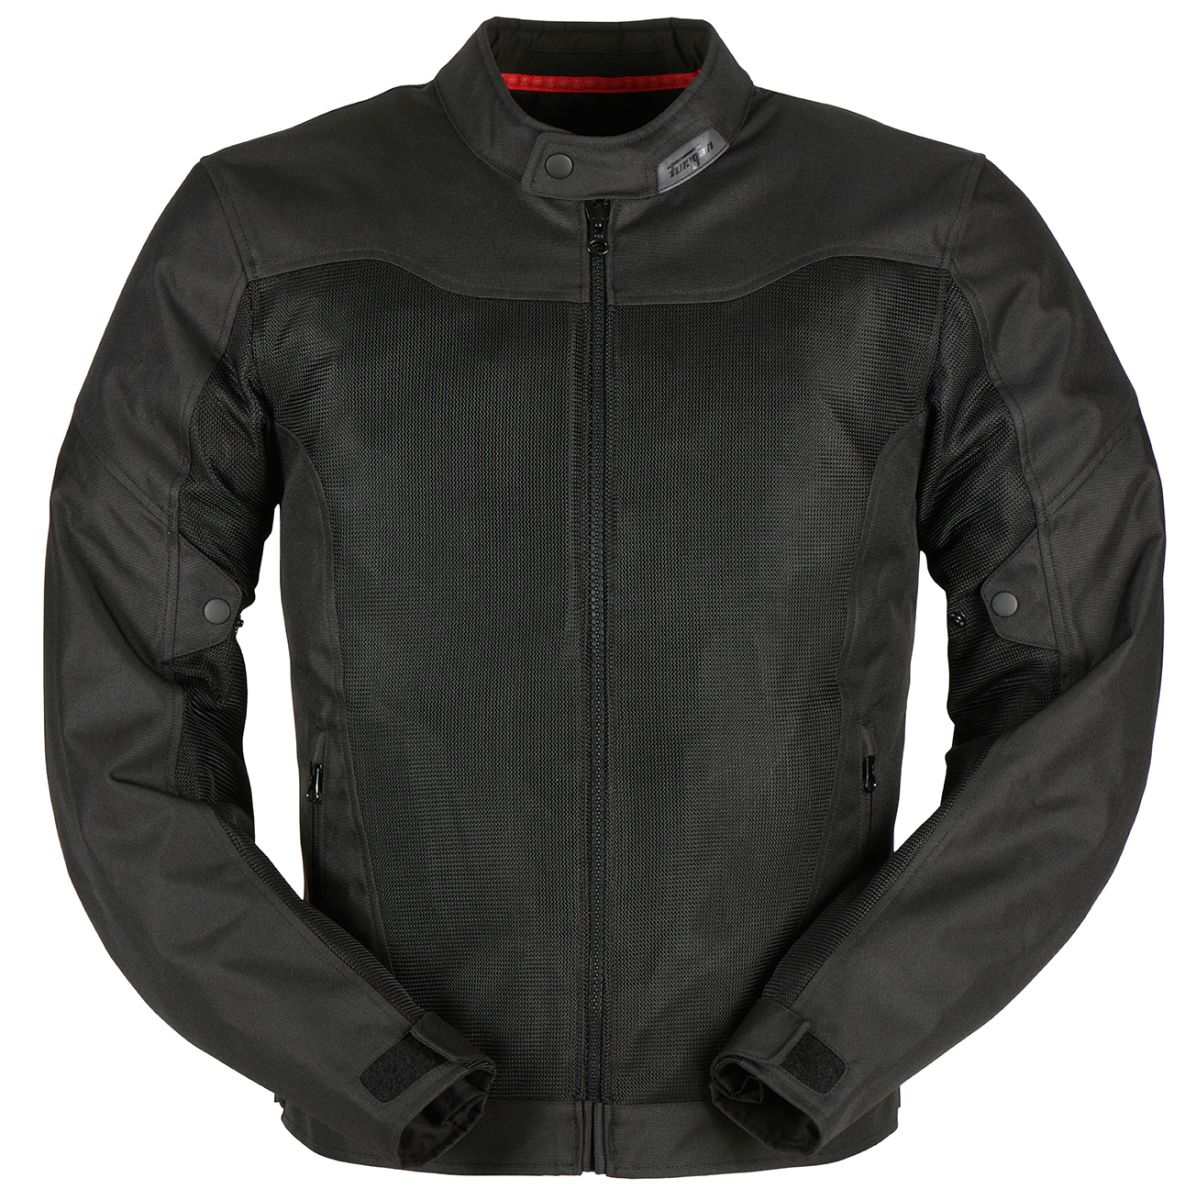 Image of Furygan Mistral 3 Evo Jacket Black Size L EN